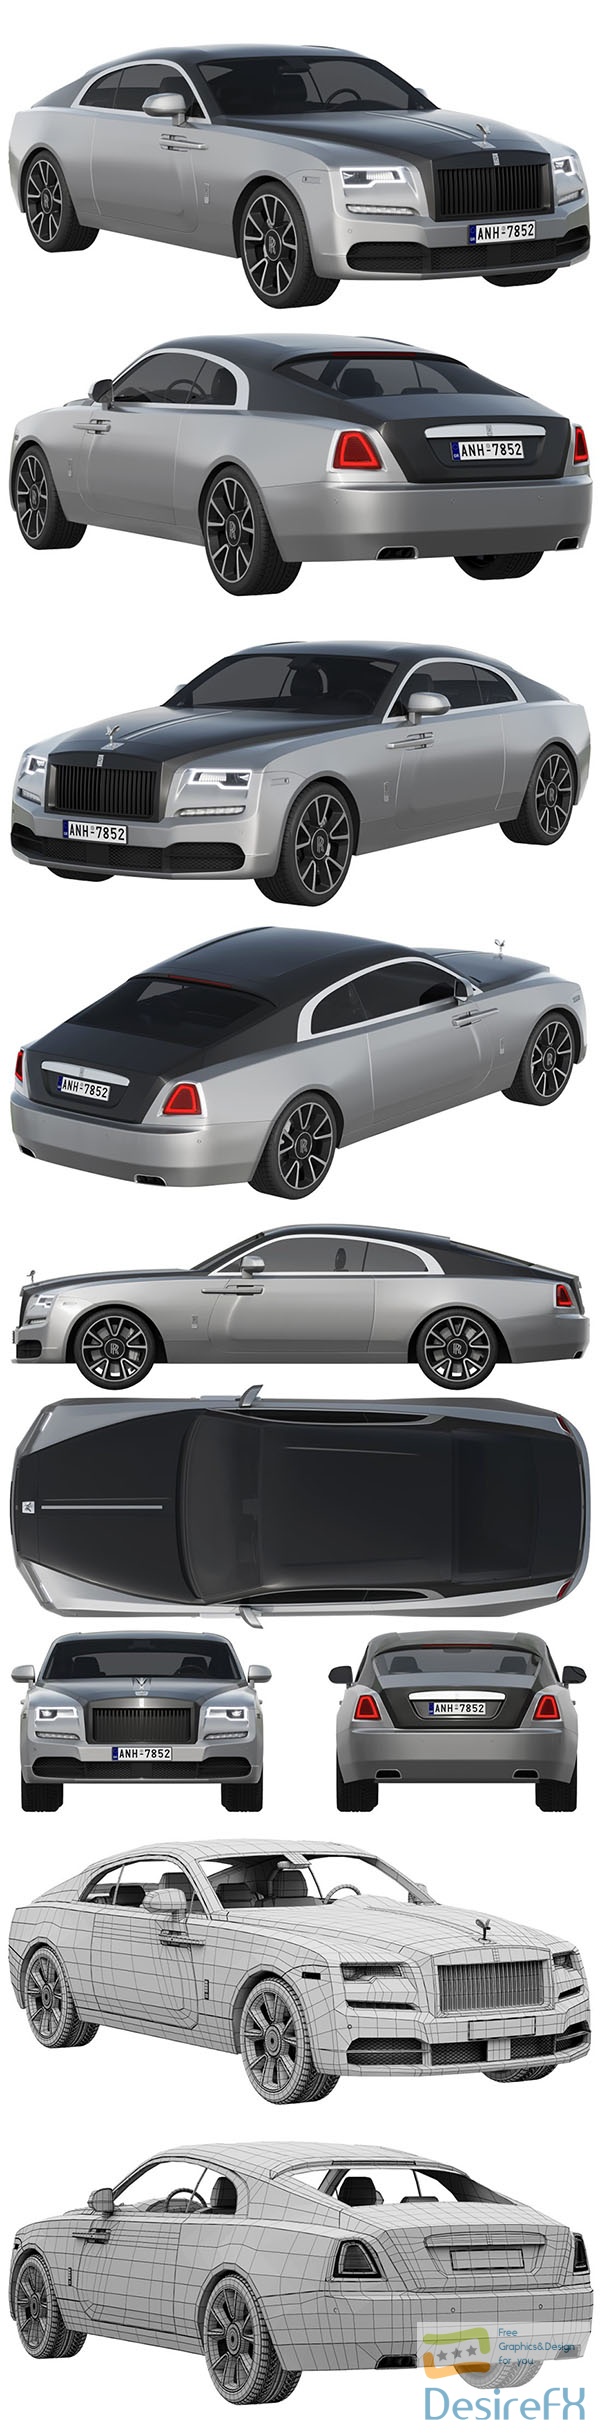 Rolls-Royce Wraith 3D Model